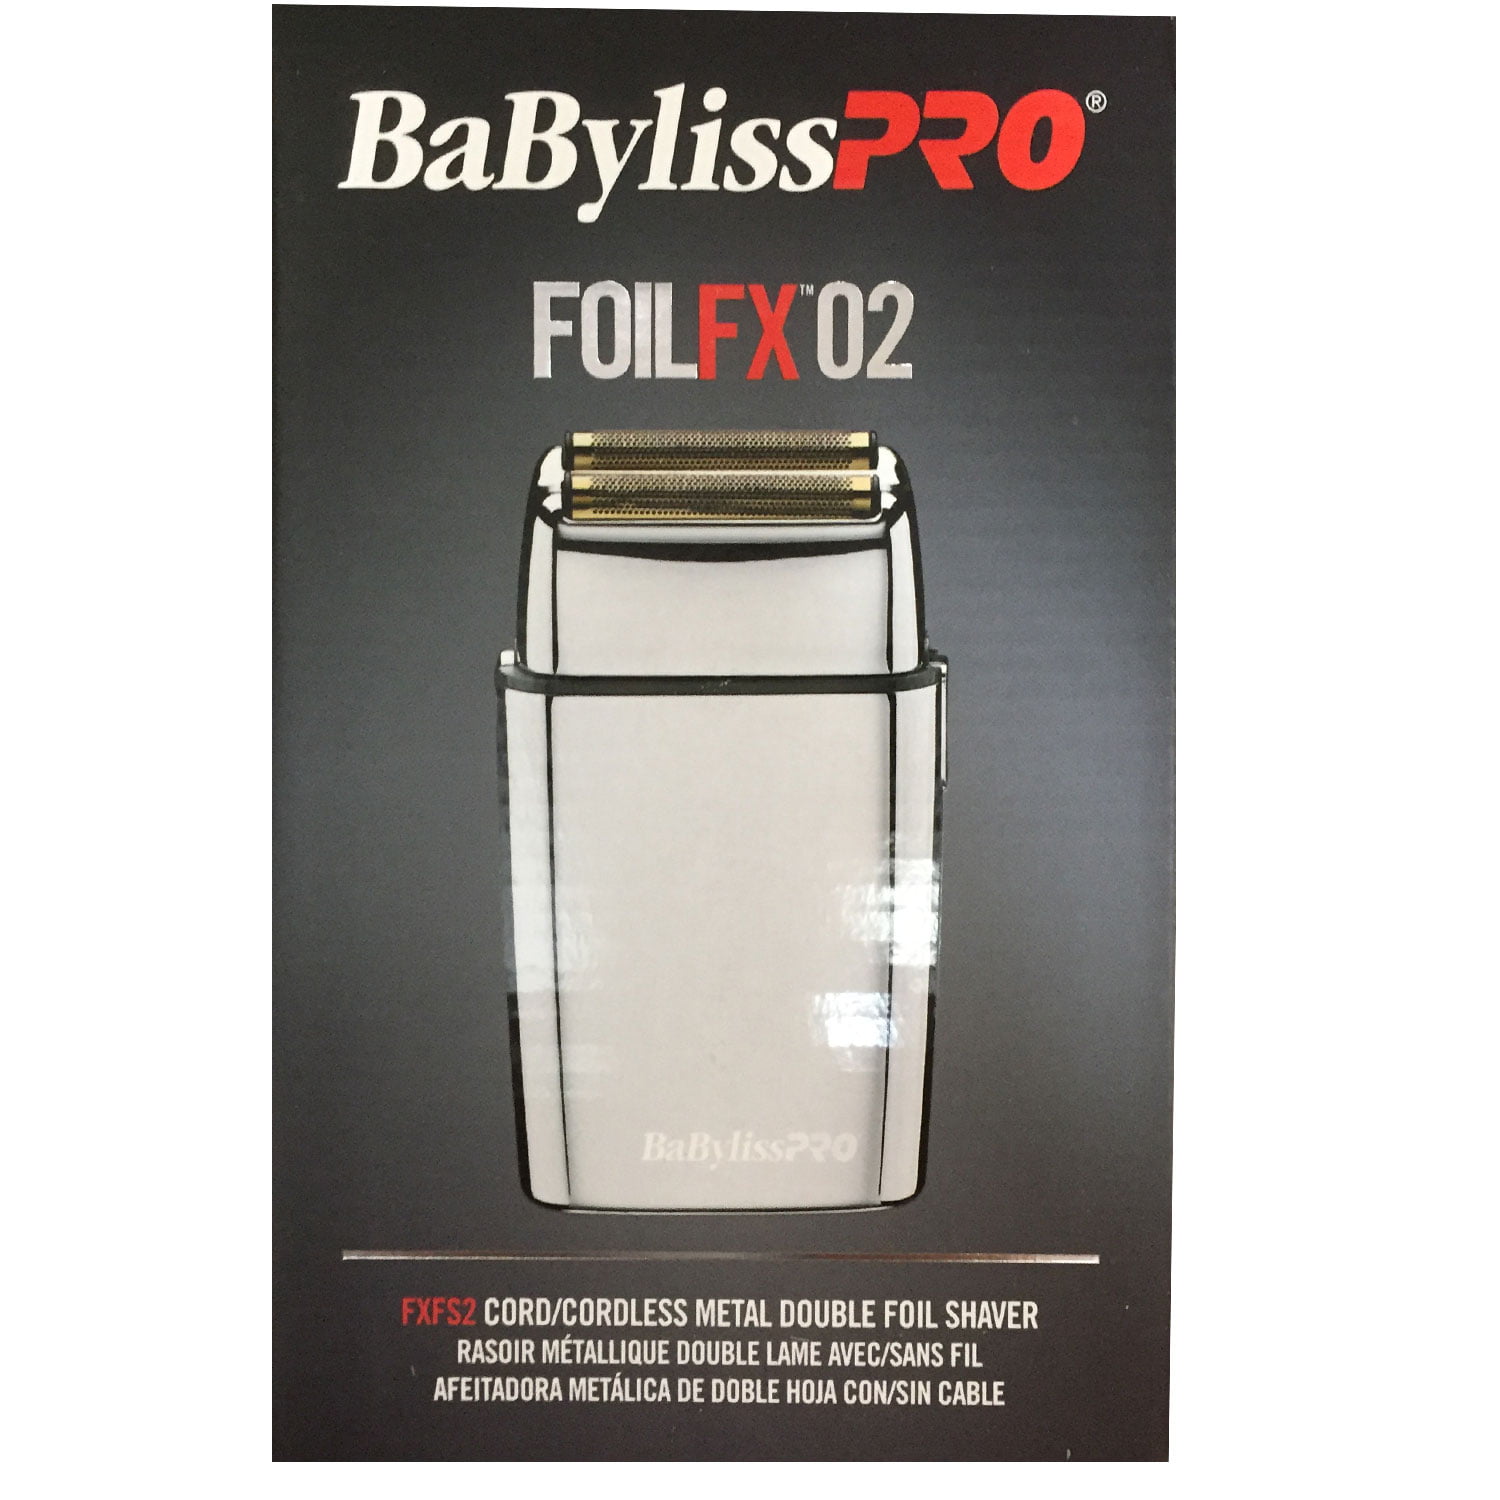 babyliss pro foilfx02 cordless metal double foil shaver fxfs2